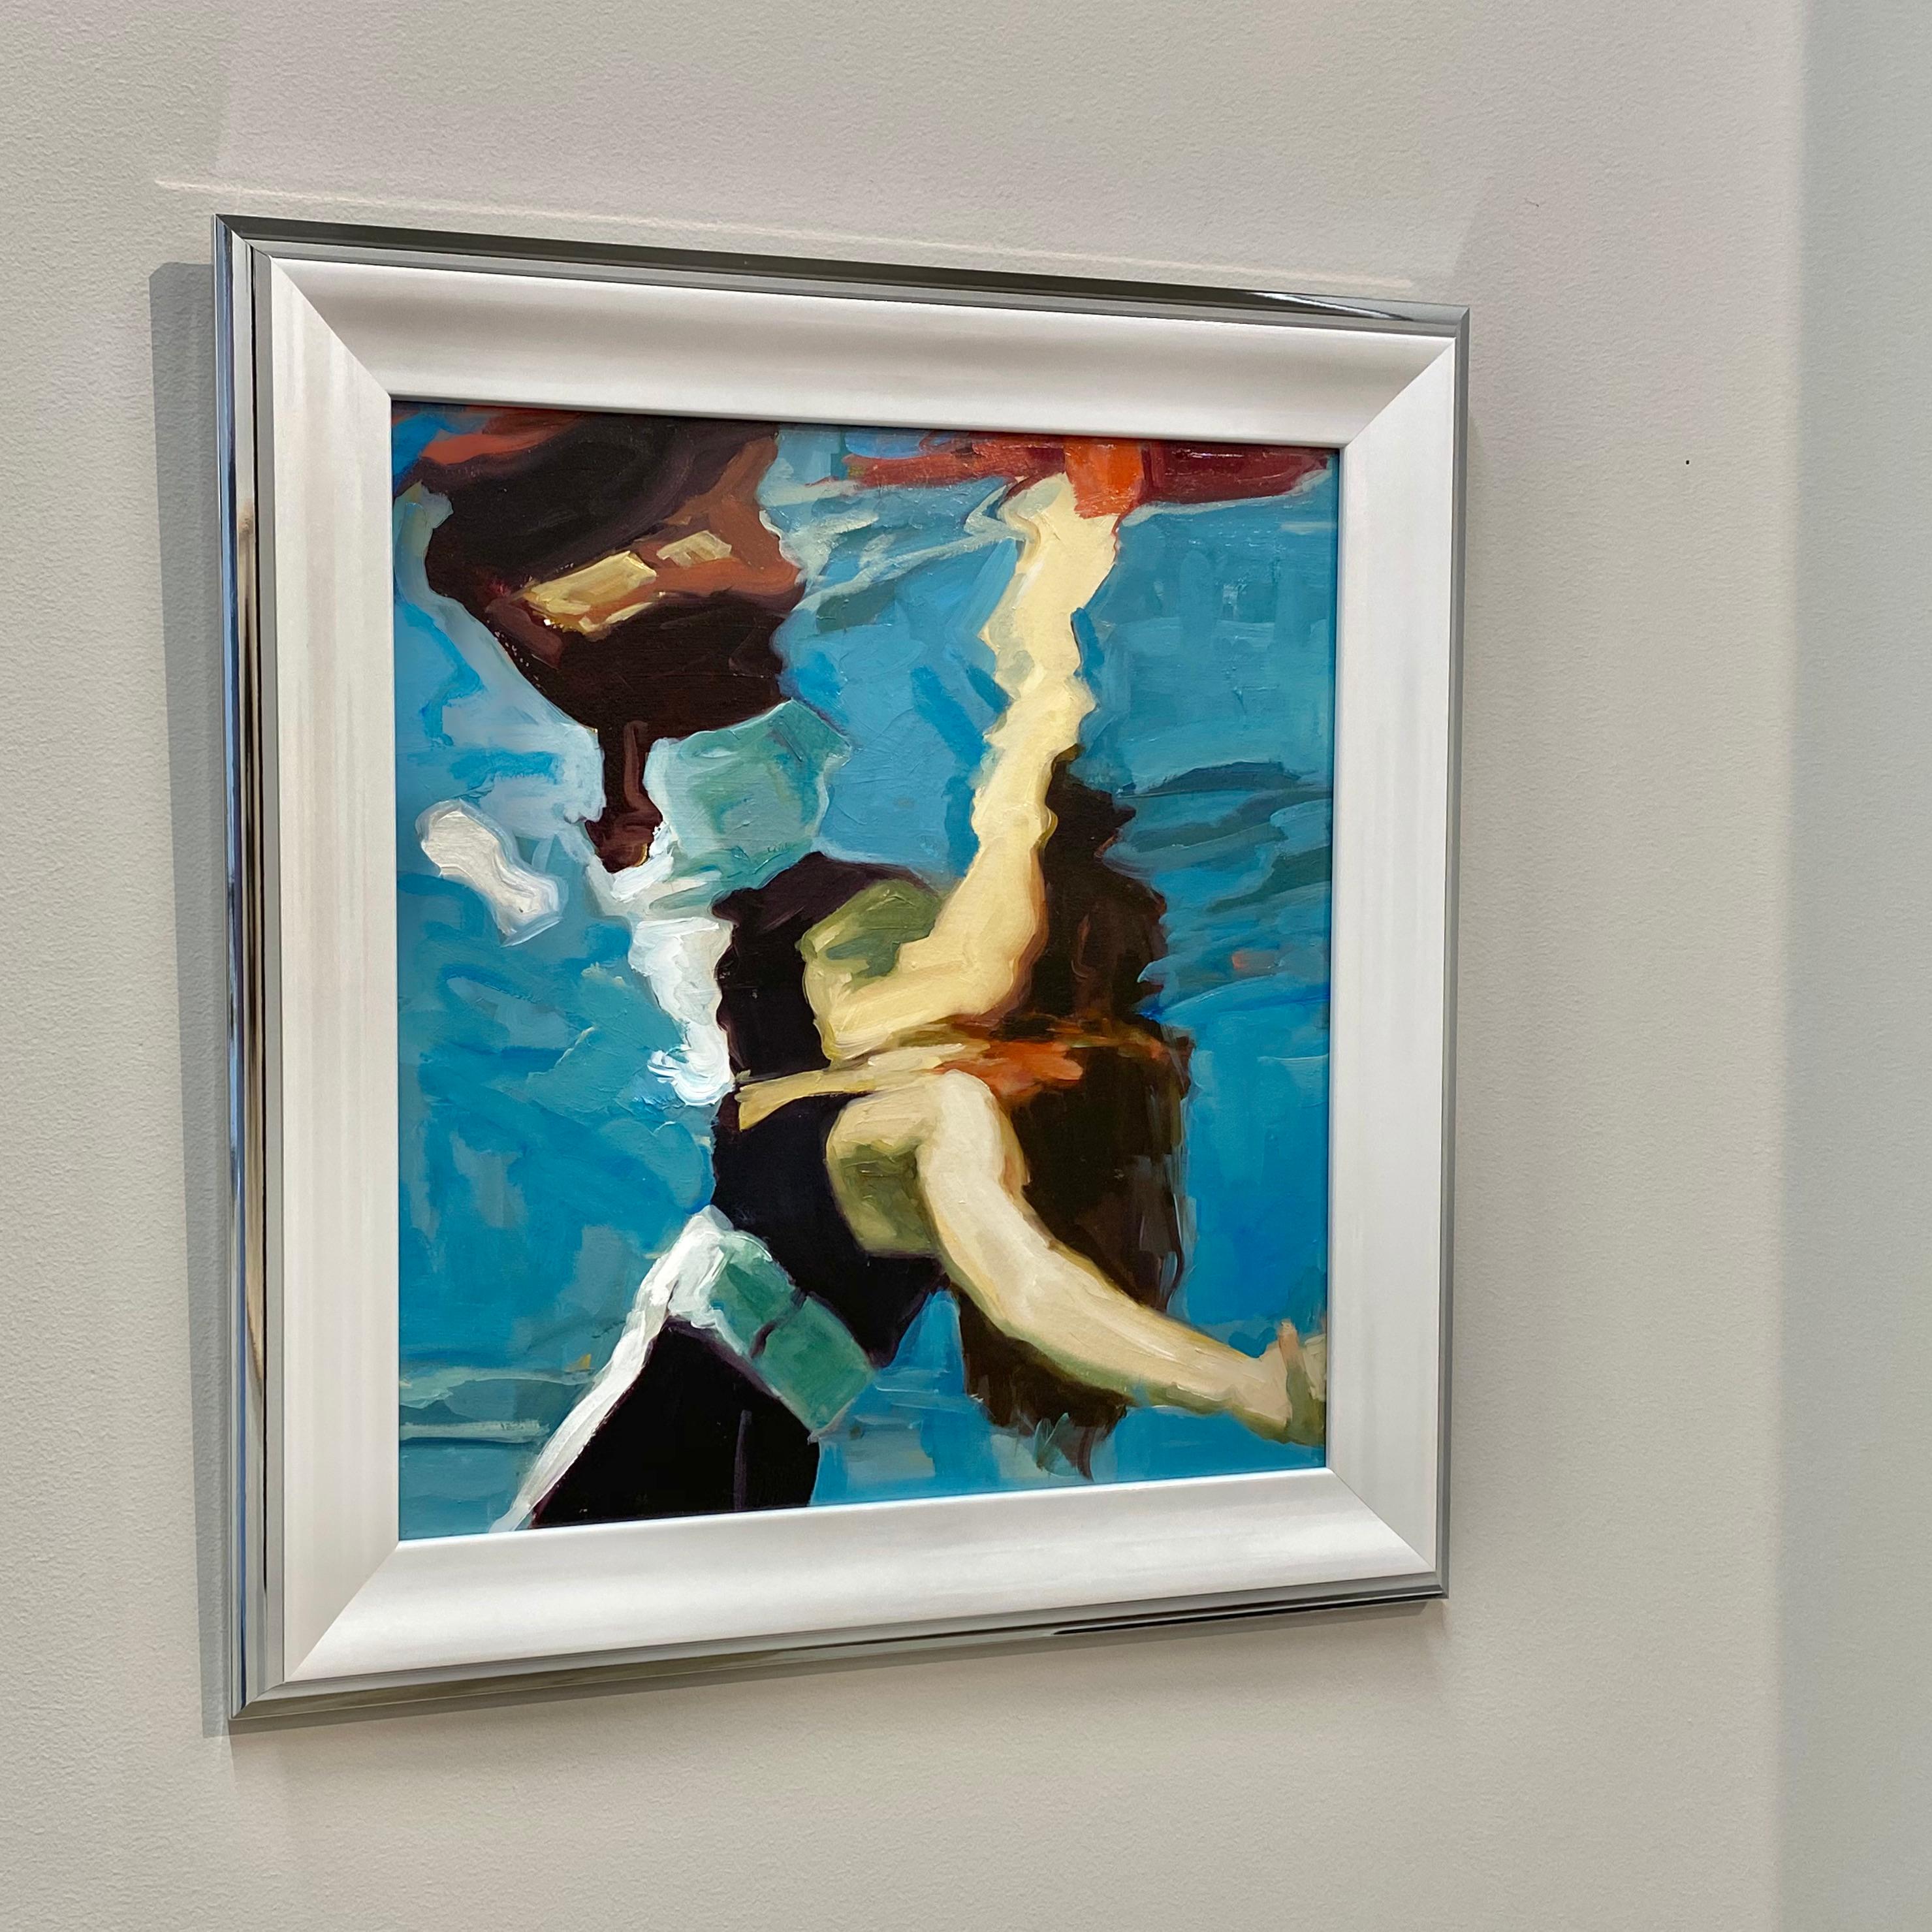 Touch - Peinture à l'huile du 21e siècle représentant une fille flottant et se reflétant  dans l'eau - Bleu Figurative Painting par Jantien de Boer